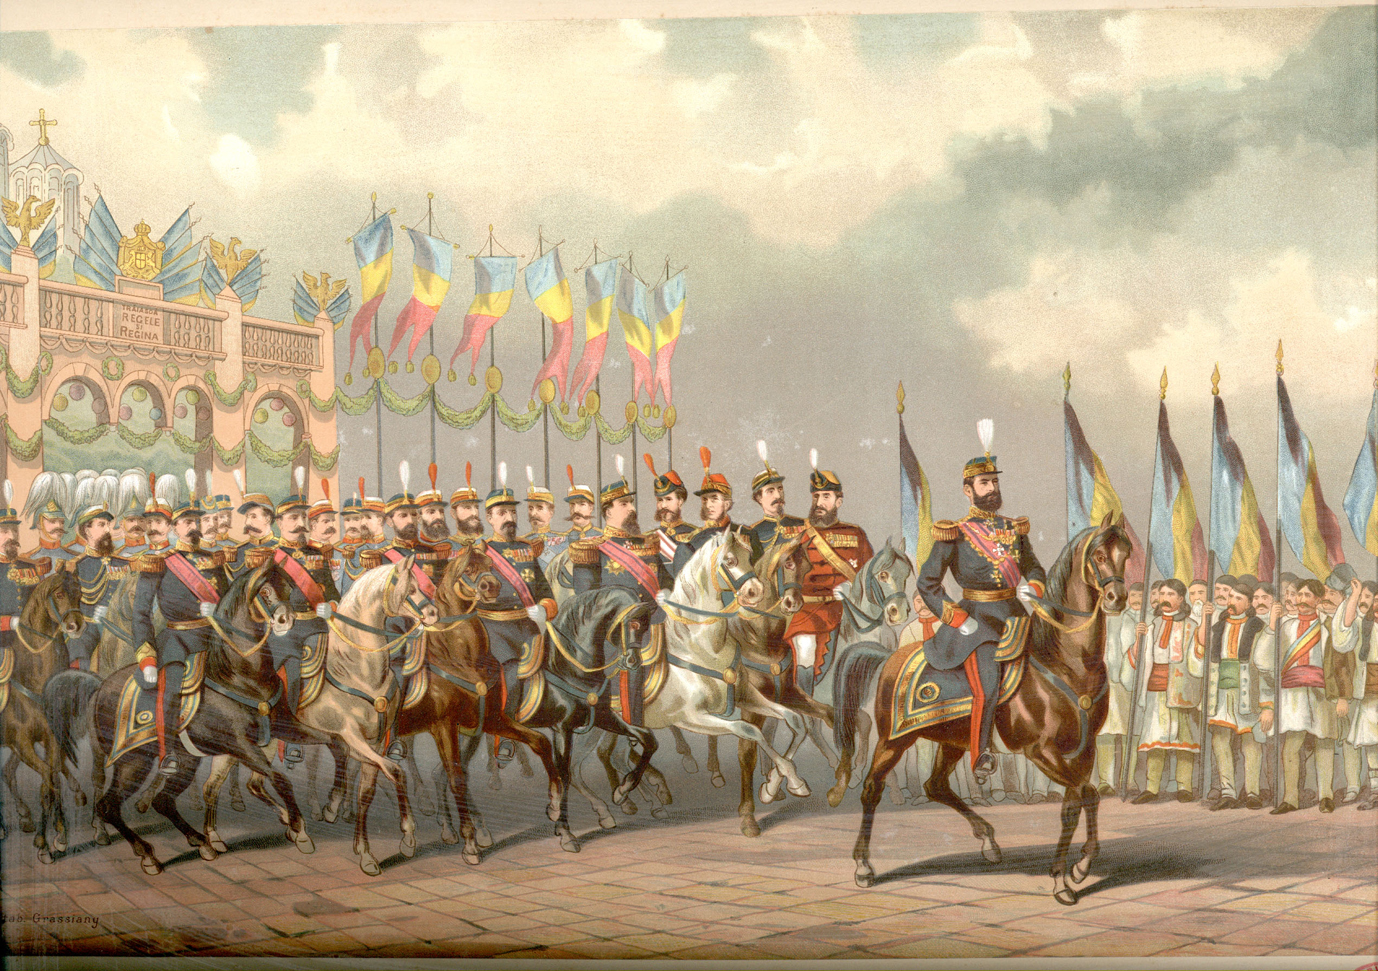 Regele Carol I cu suita, în Albumul Carelor Simbolice, cromolitografie, Biblioteca Academiei Române